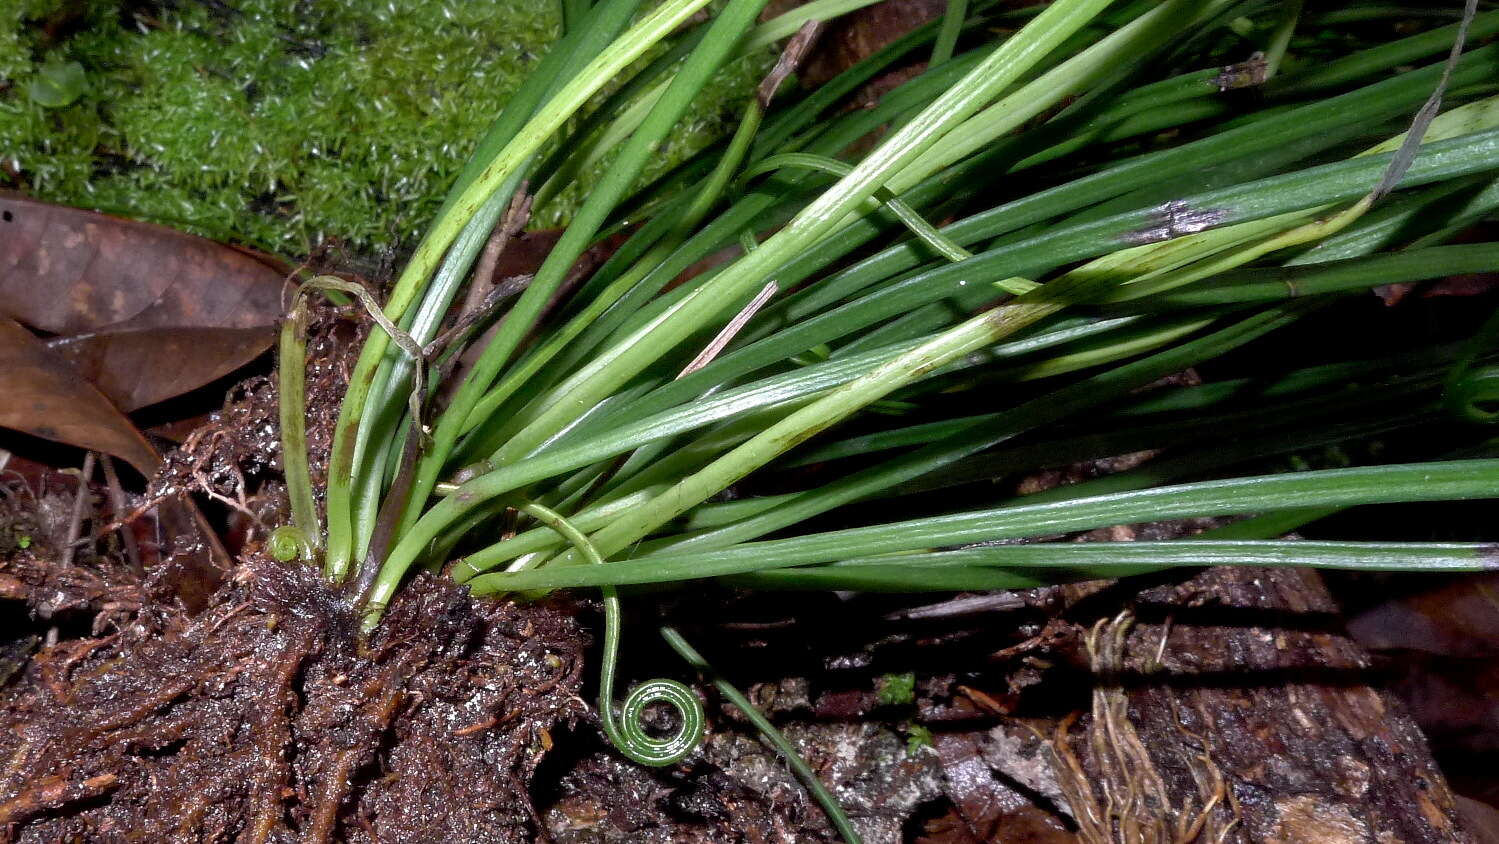 Image of shoestring fern